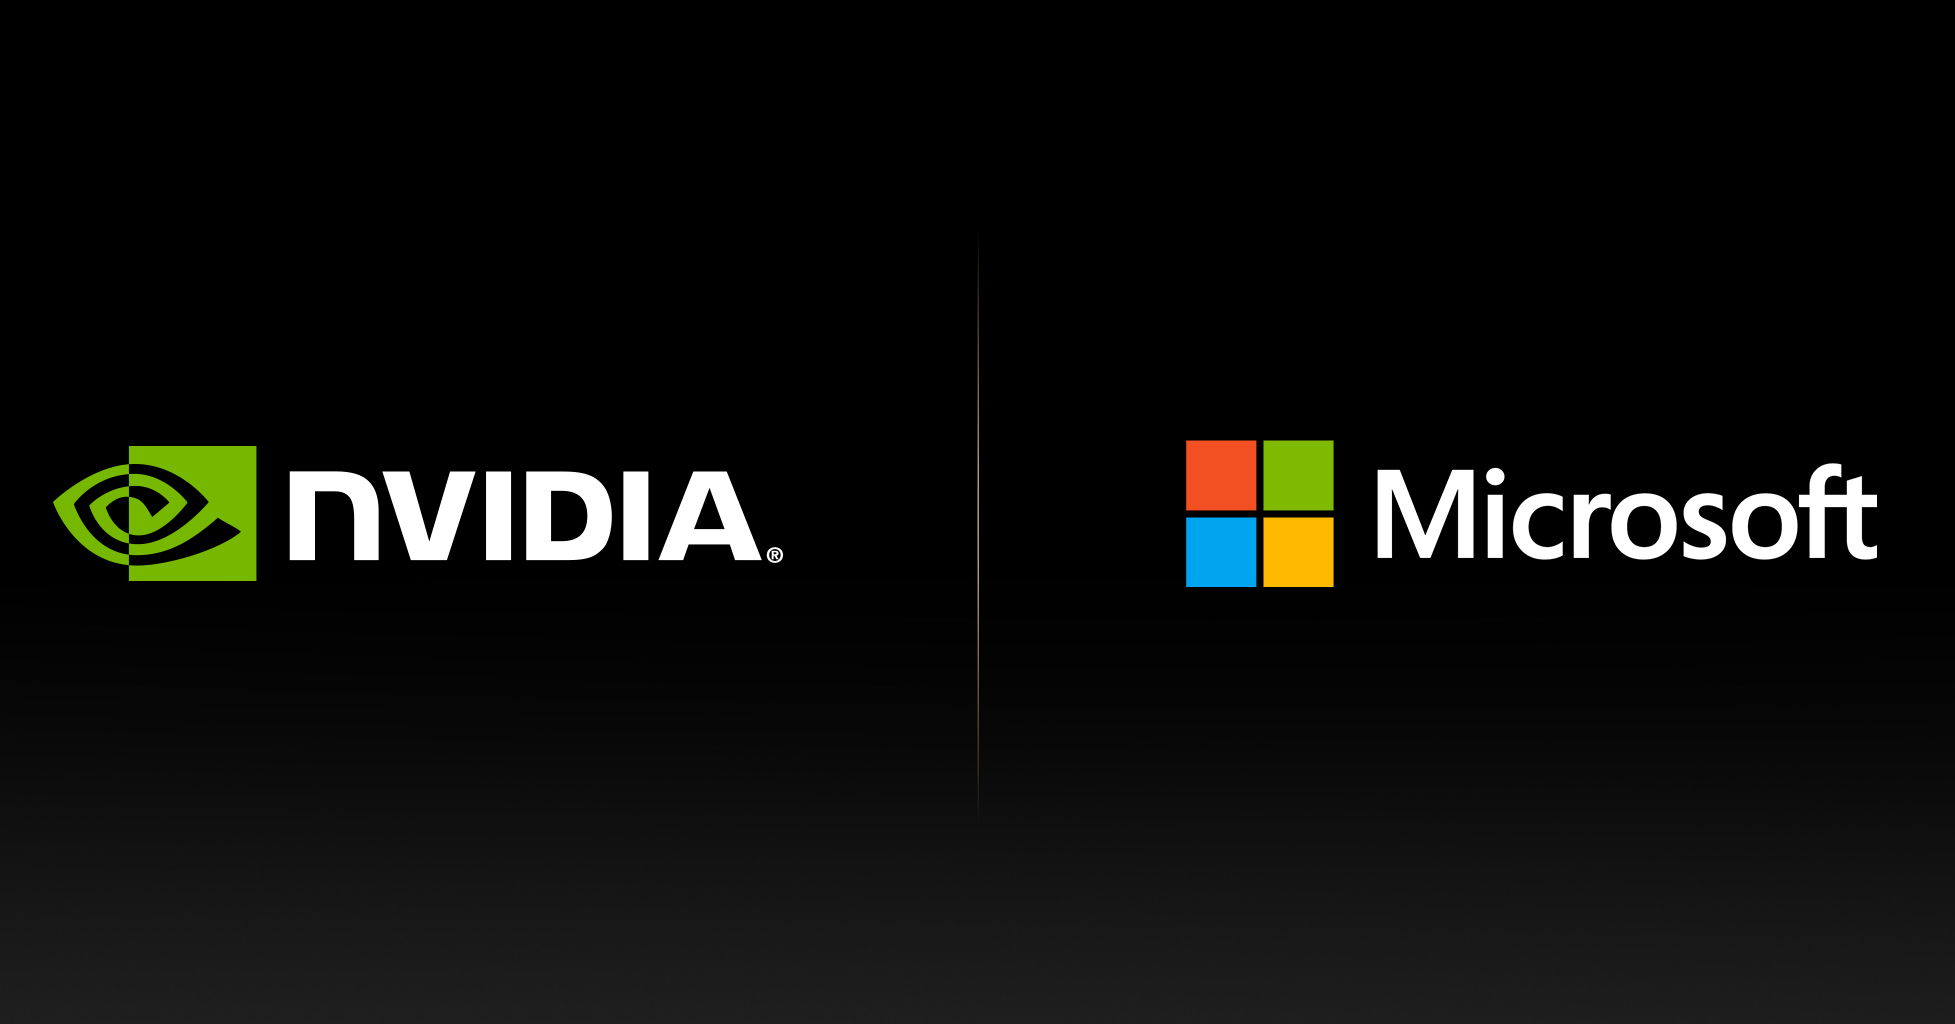 NVIDIAとMicrosoft、「AIクラウドスパコン」で提携